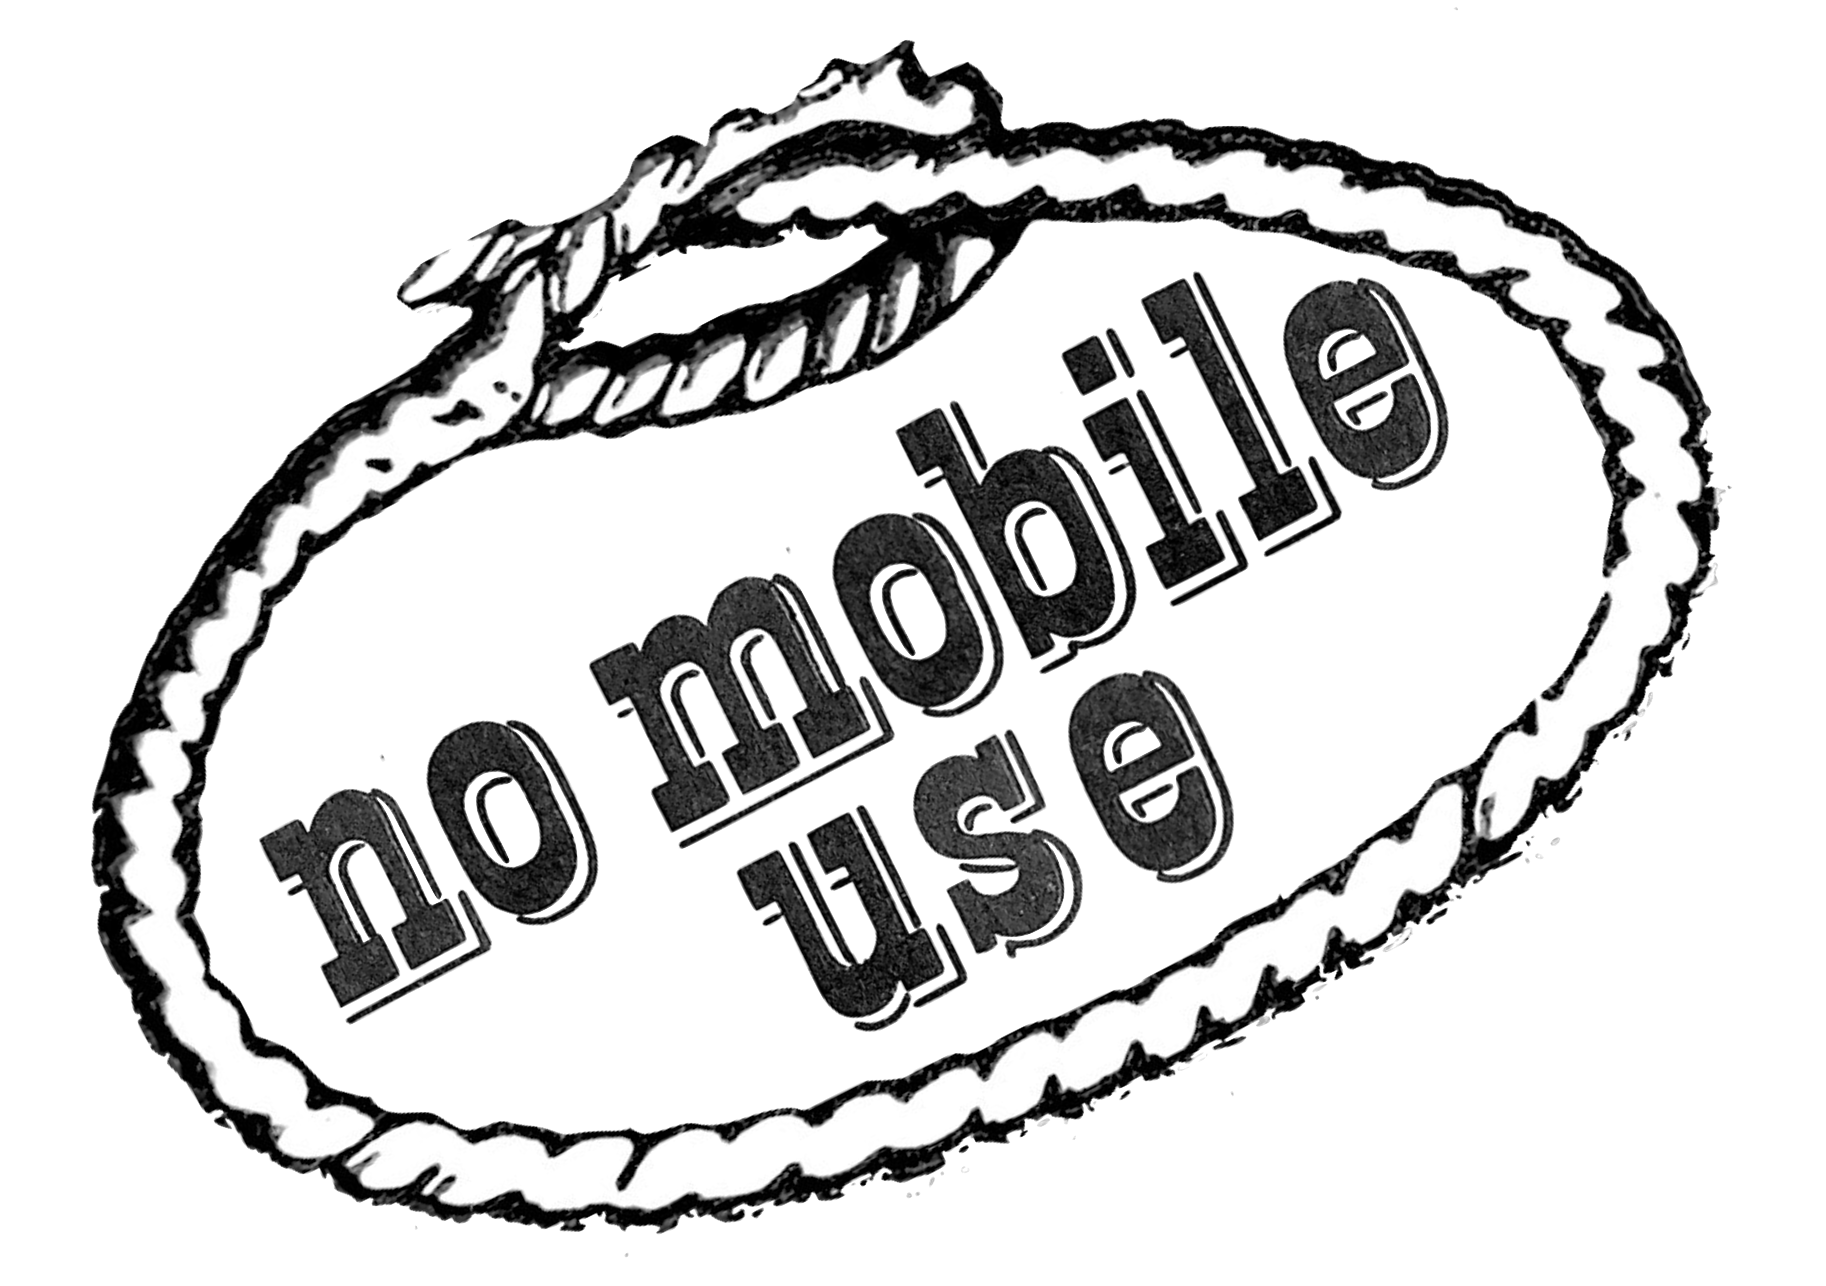 No Mobile Use Slant